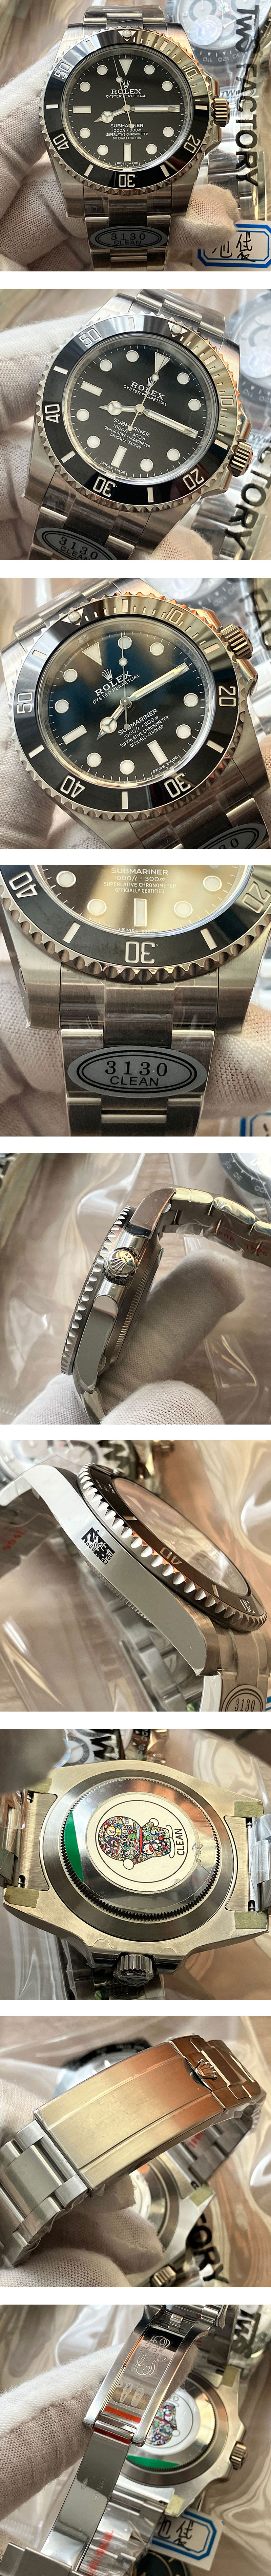 紳士腕時計 CLEAN製ROLEX サブマリーナスーパーコピー40mm 114060 ブラック 3130ムーブ 28800振動 スーパールミナンス